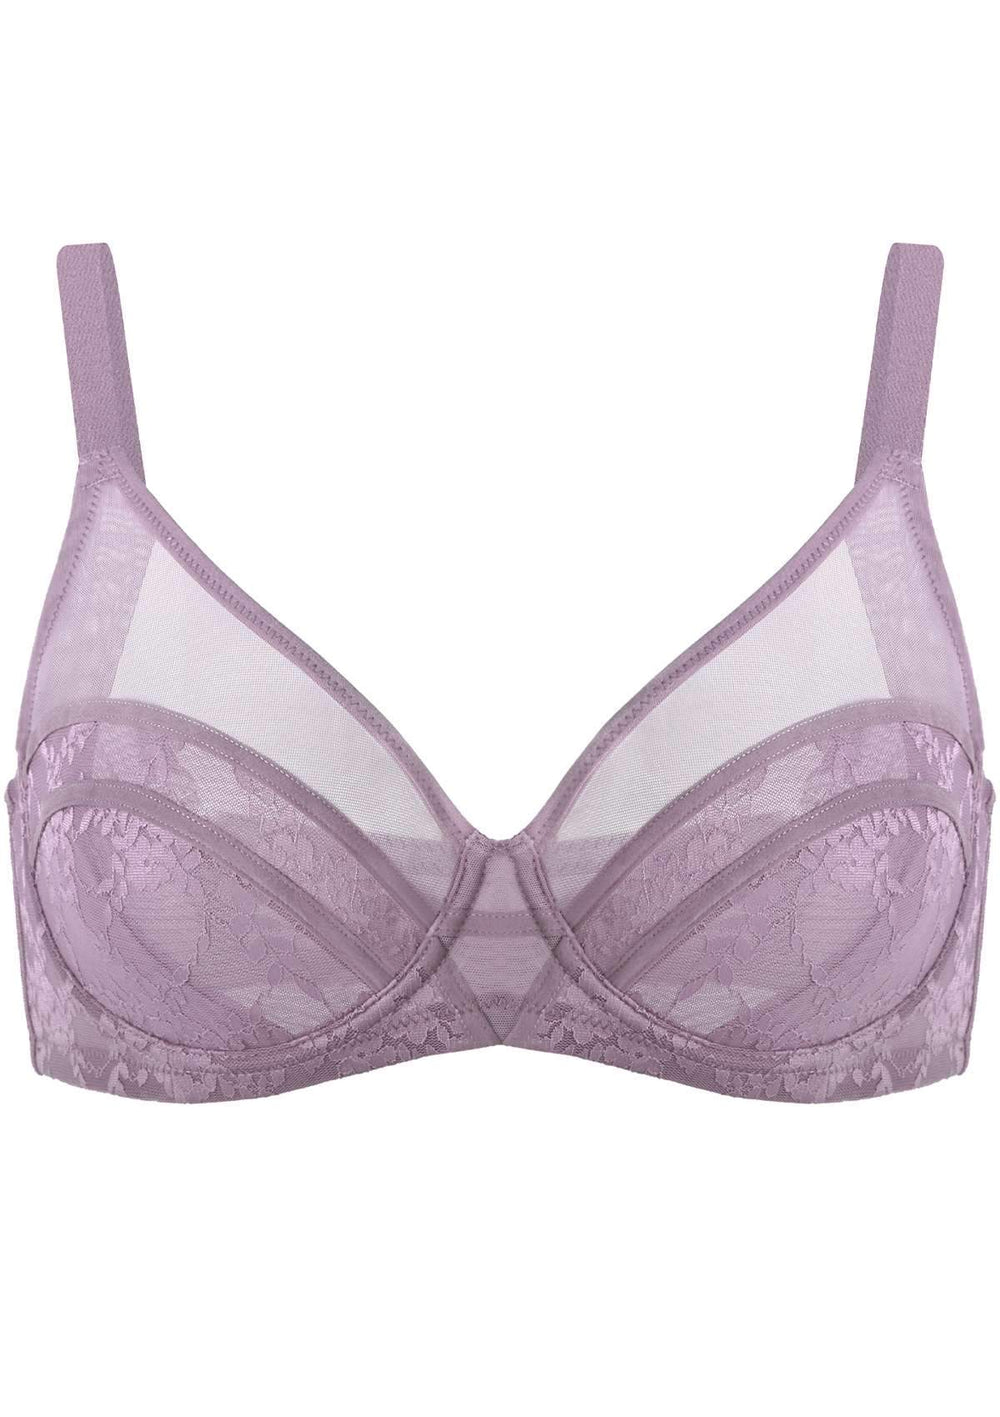 NWT Victoria's Secret unlined 34C,34D BRA SET S mesh Thong neon Pink Purple  lace